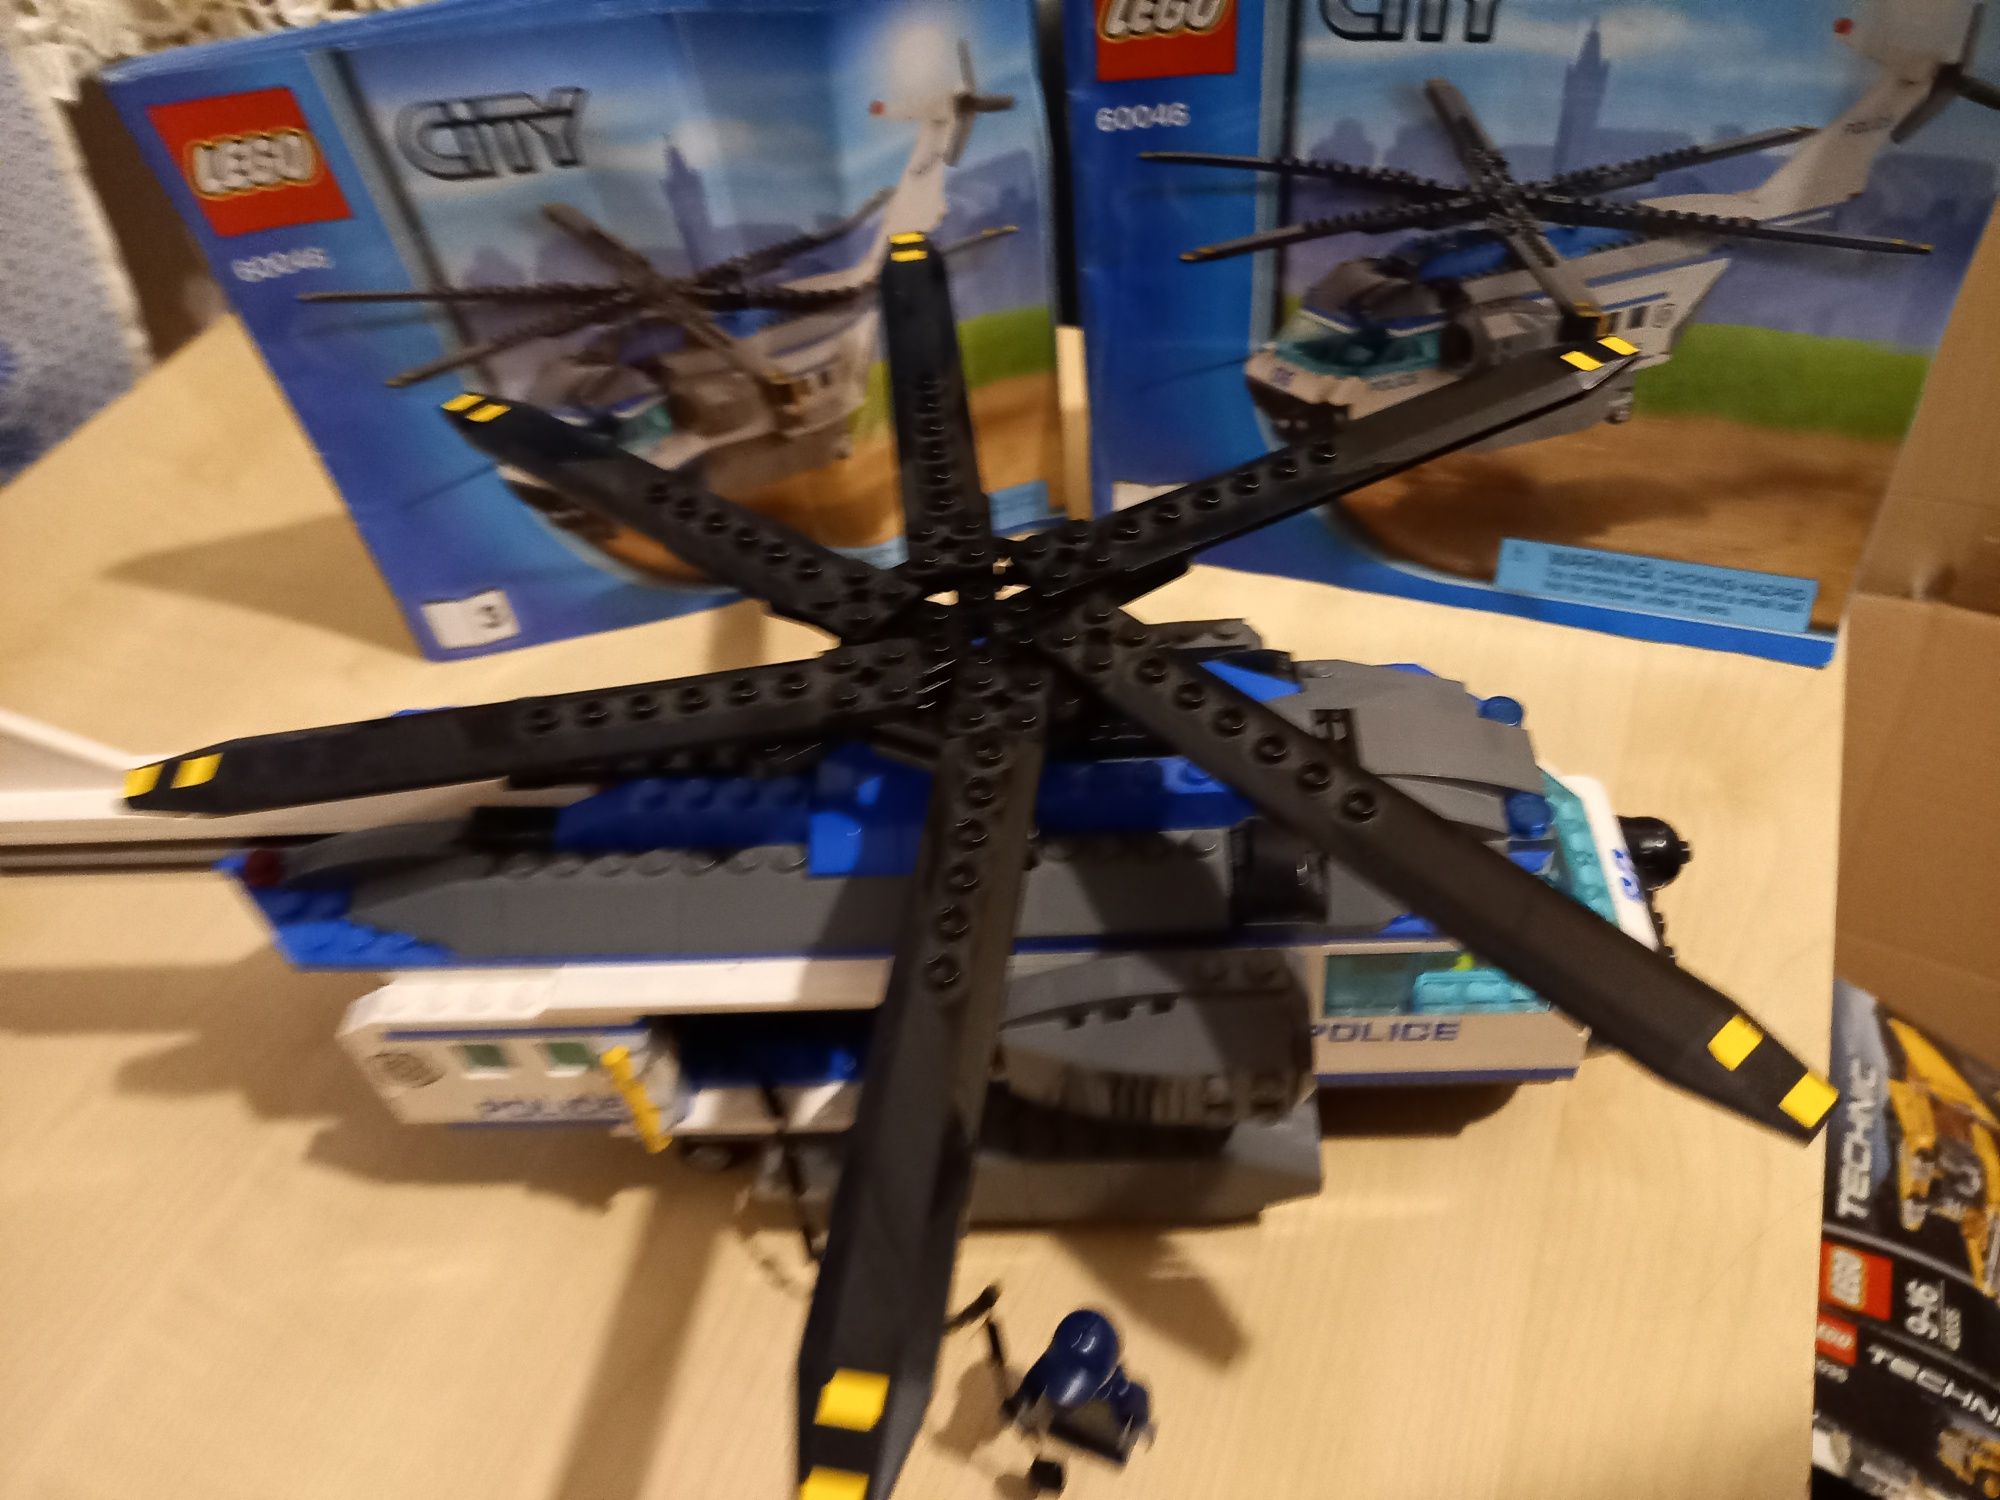 Helikopter Policja Lego